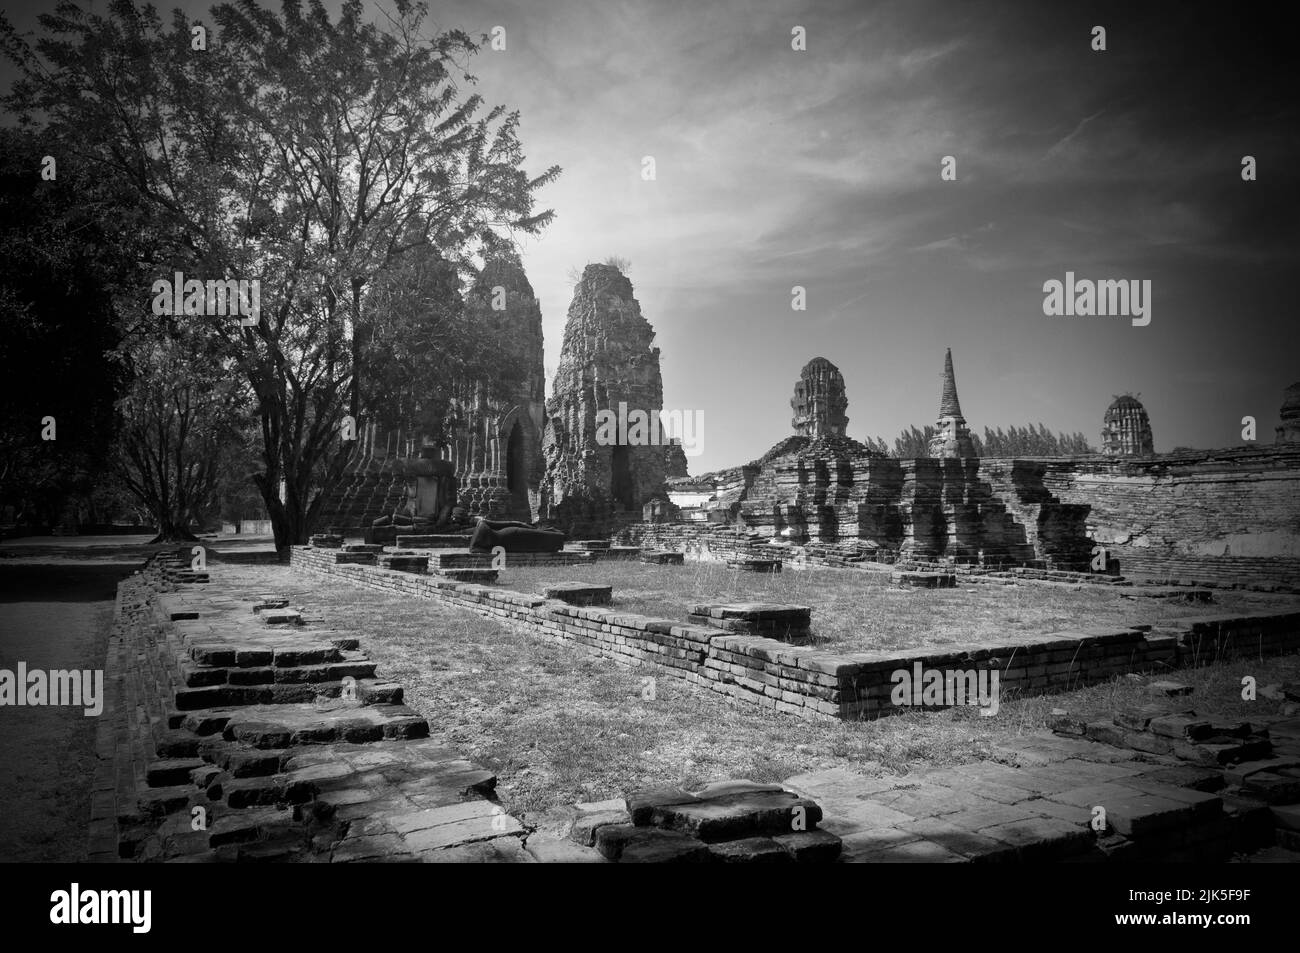 Foto monocromatica delle rovine di antichi templi e palazzi nel Parco storico di Ayutthaya, famosa attrazione storica. Foto Stock